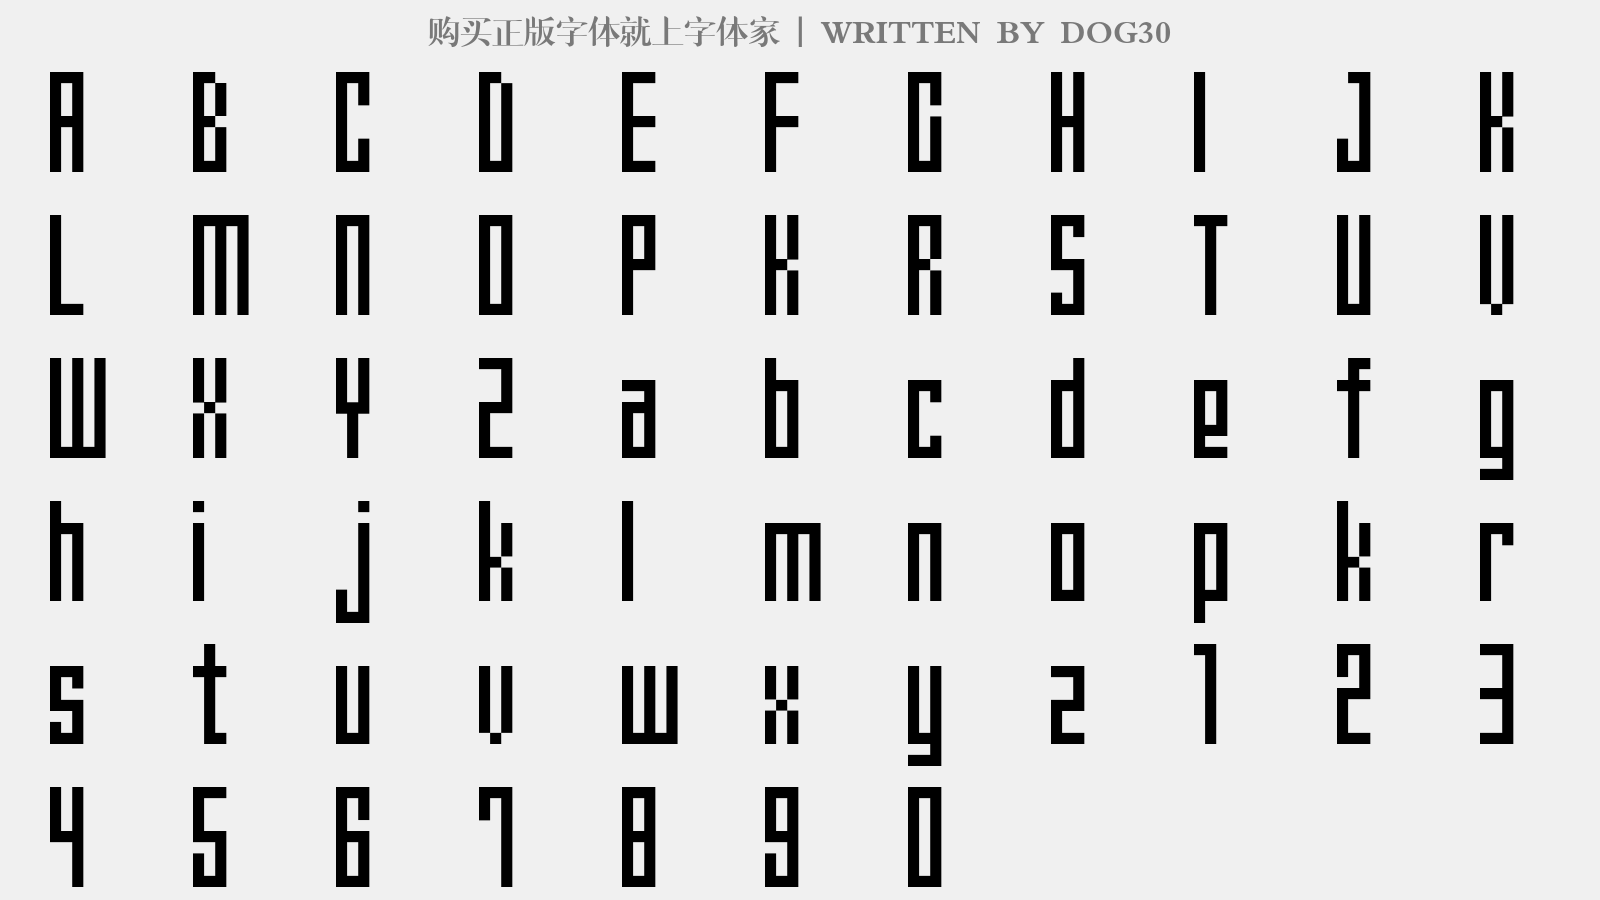 ELECN - 大写字母/小写字母/数字